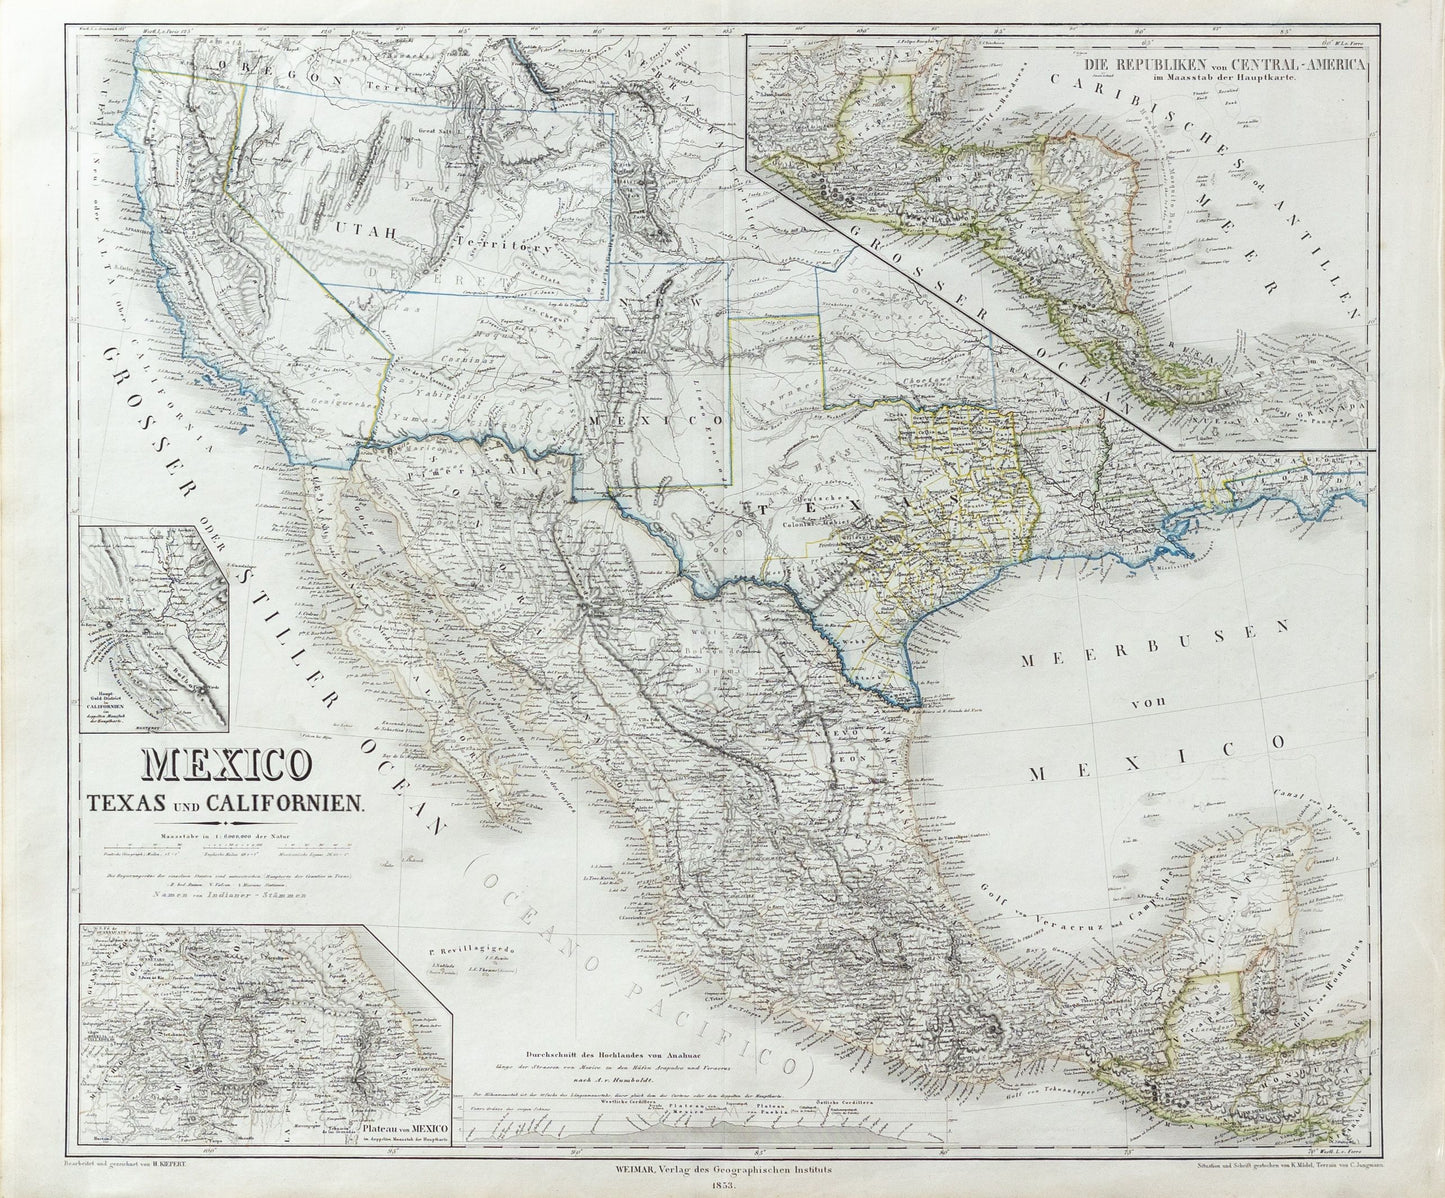 Kiepert, Heinrich. Meixco, Texas und Californien. 1853.